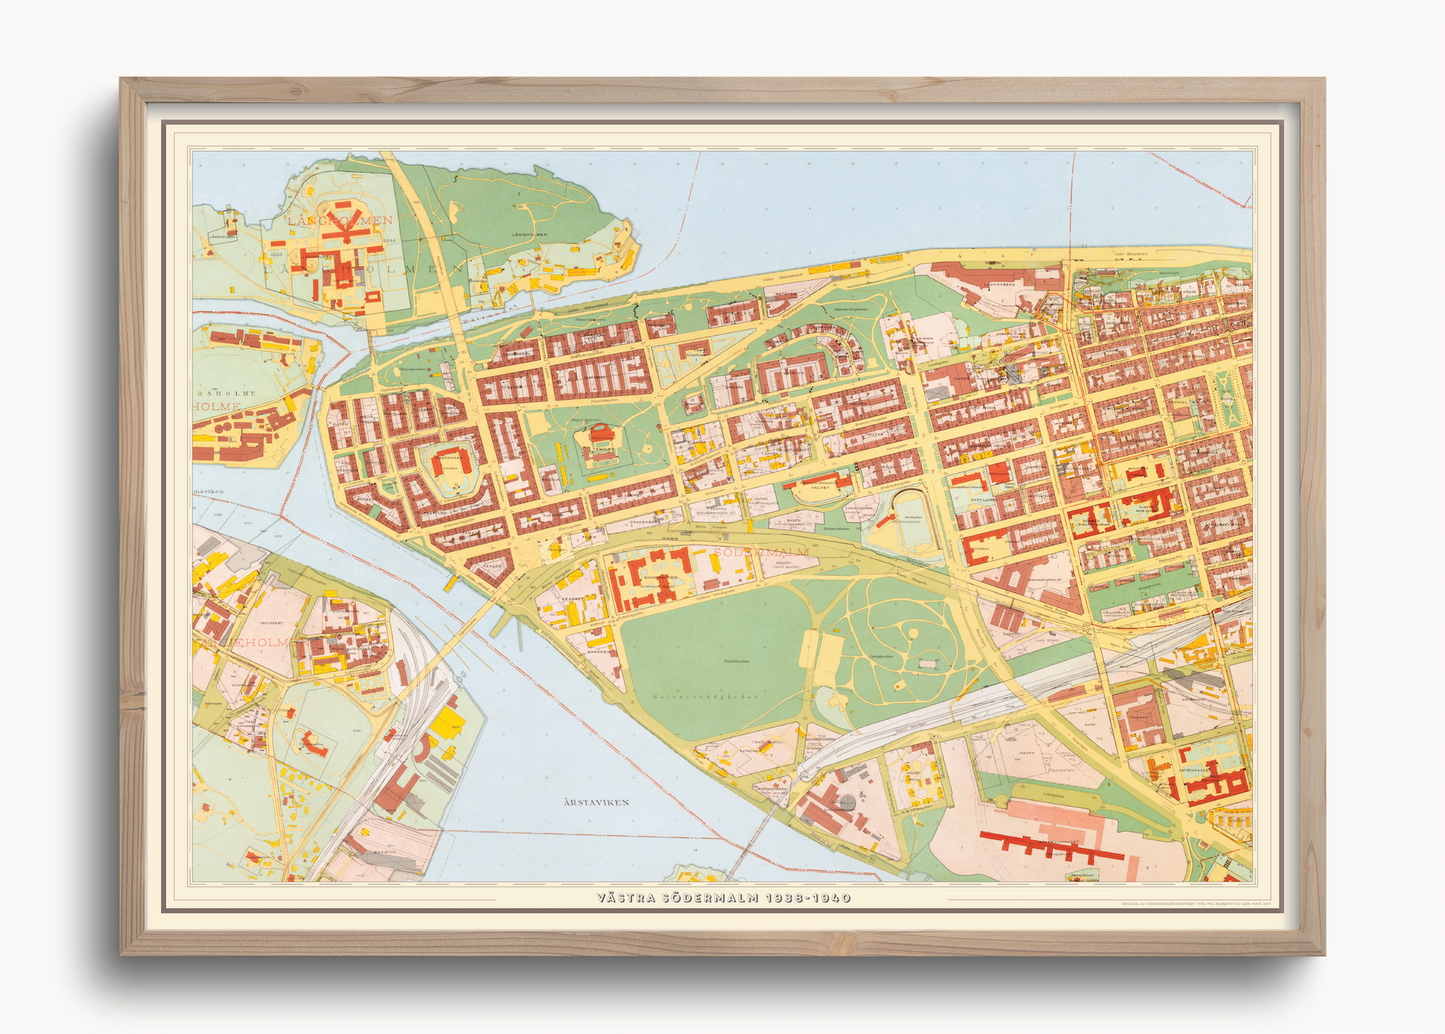 Västra Södermalm (1938-1940 års karta över Stockholm)